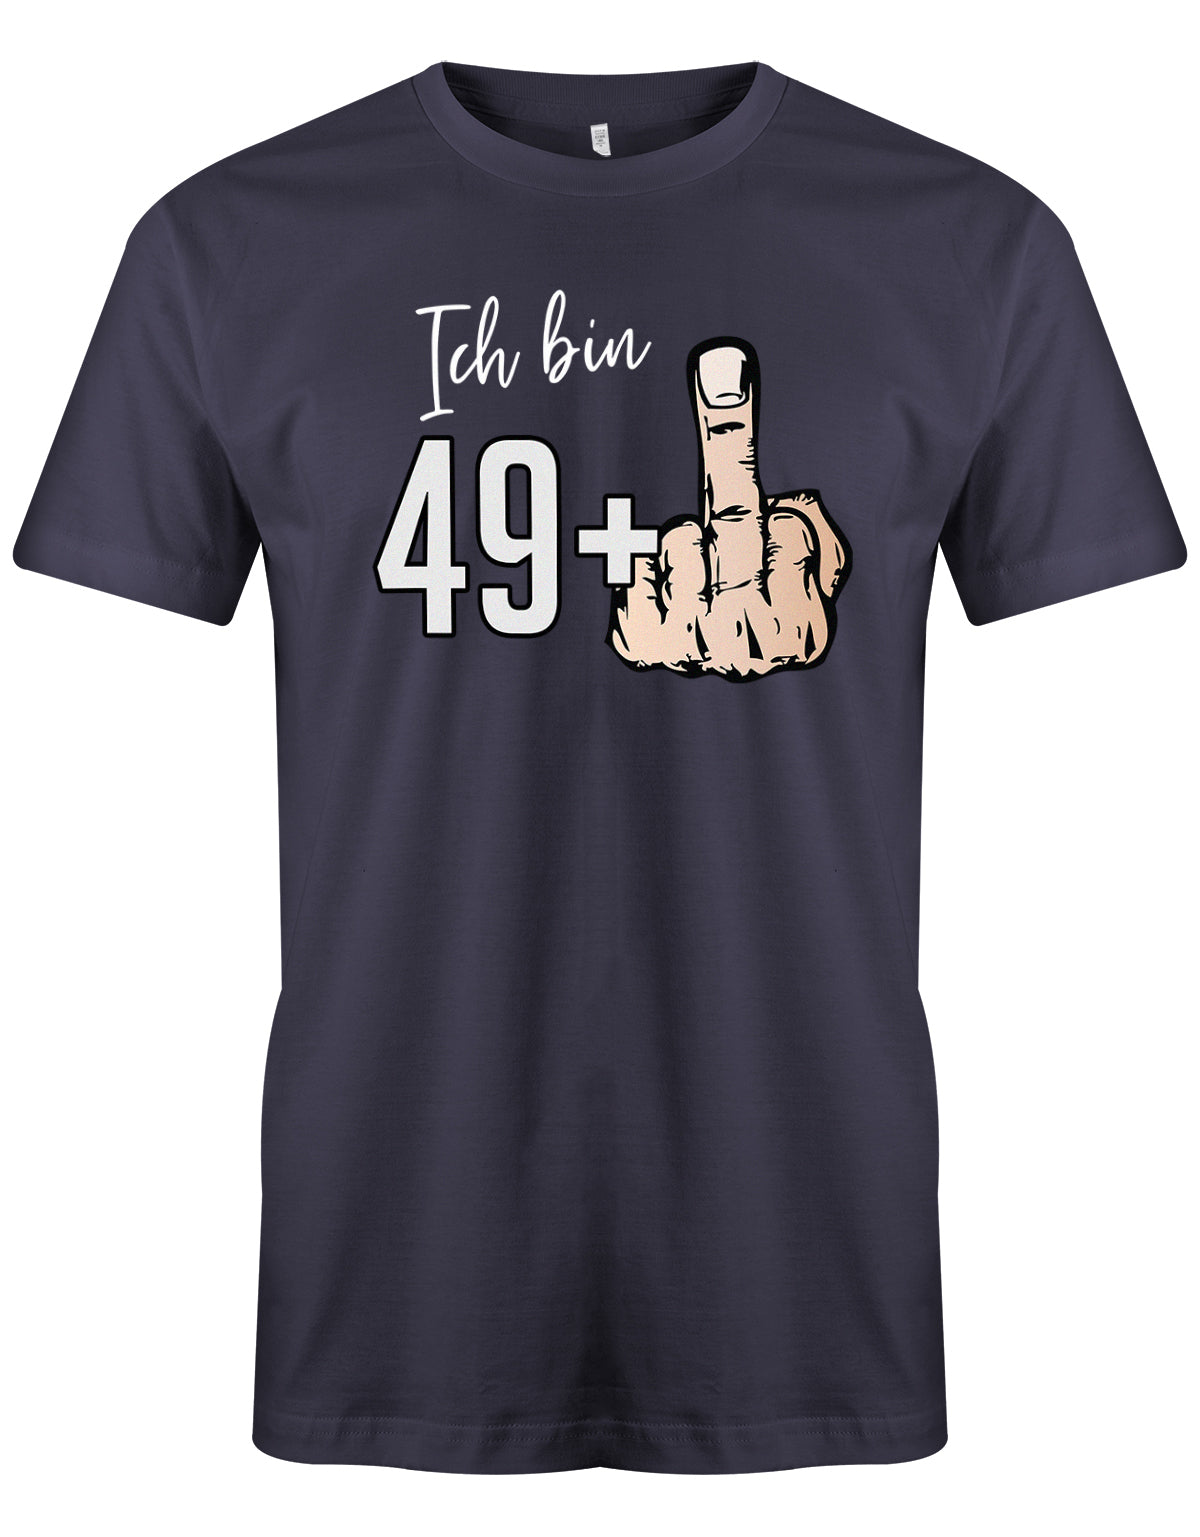 Lustiges T-Shirt zum 50 Geburtstag für den Mann Bedruckt mit Ich bin 49+ Stinkefinger. Navy